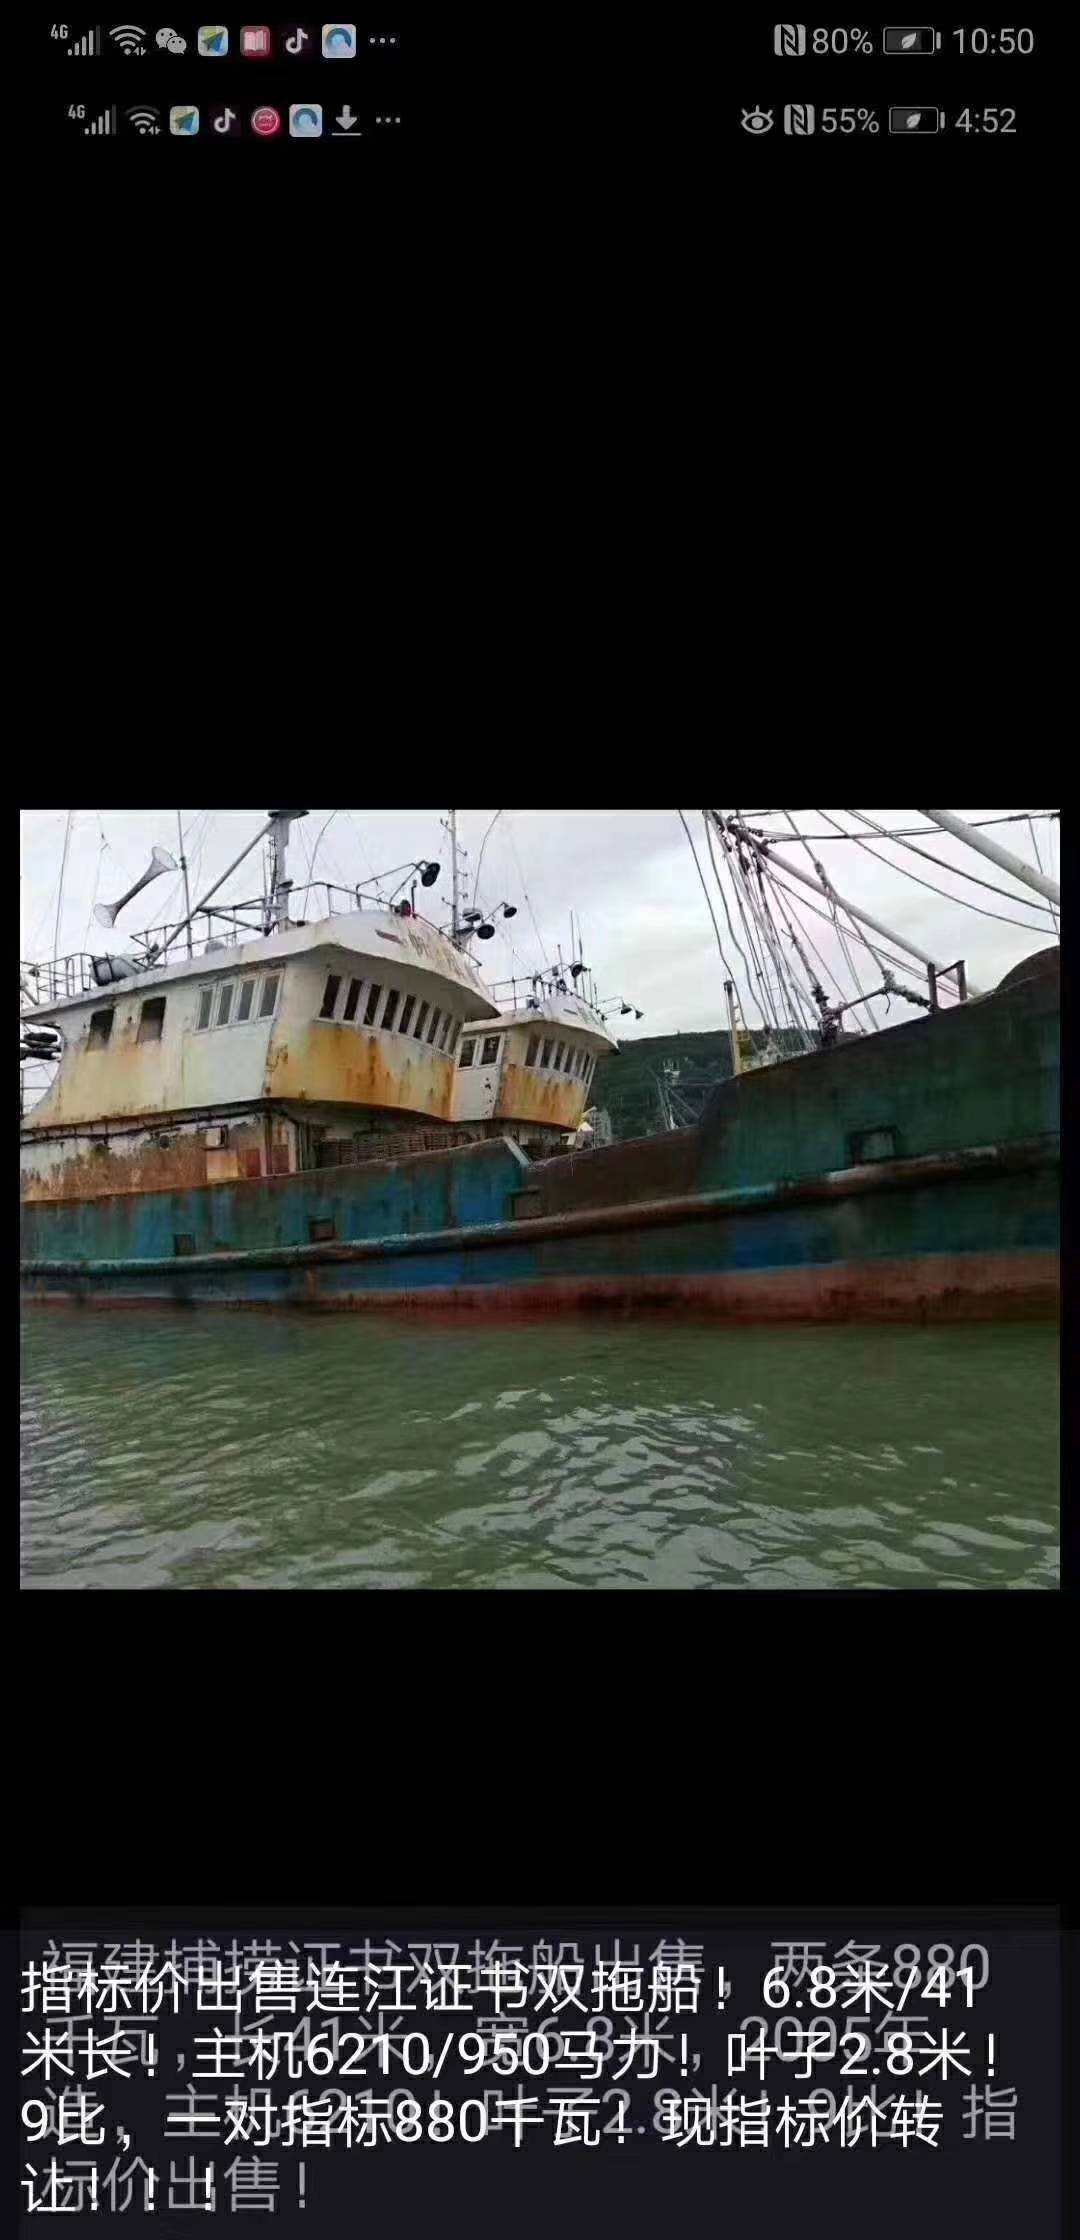 双拖网渔船